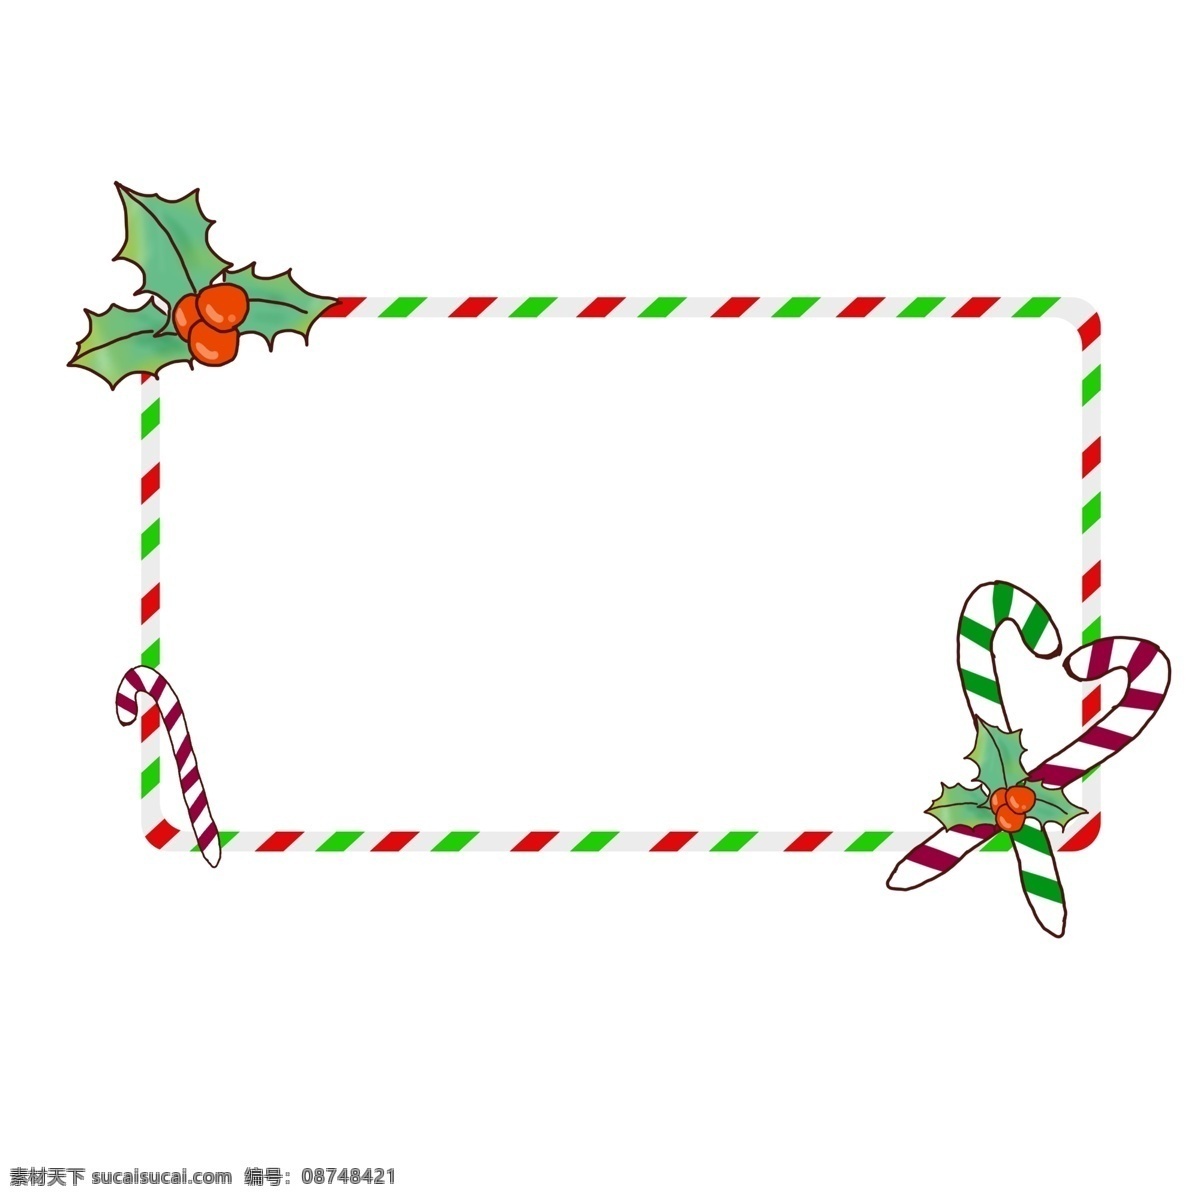 圣诞节 手绘 边框 拐杖 糖 礼物 礼物堆 拐杖糖 圣诞边框 圣诞 可爱 矢量 简单 手绘边框 心型拐杖糖